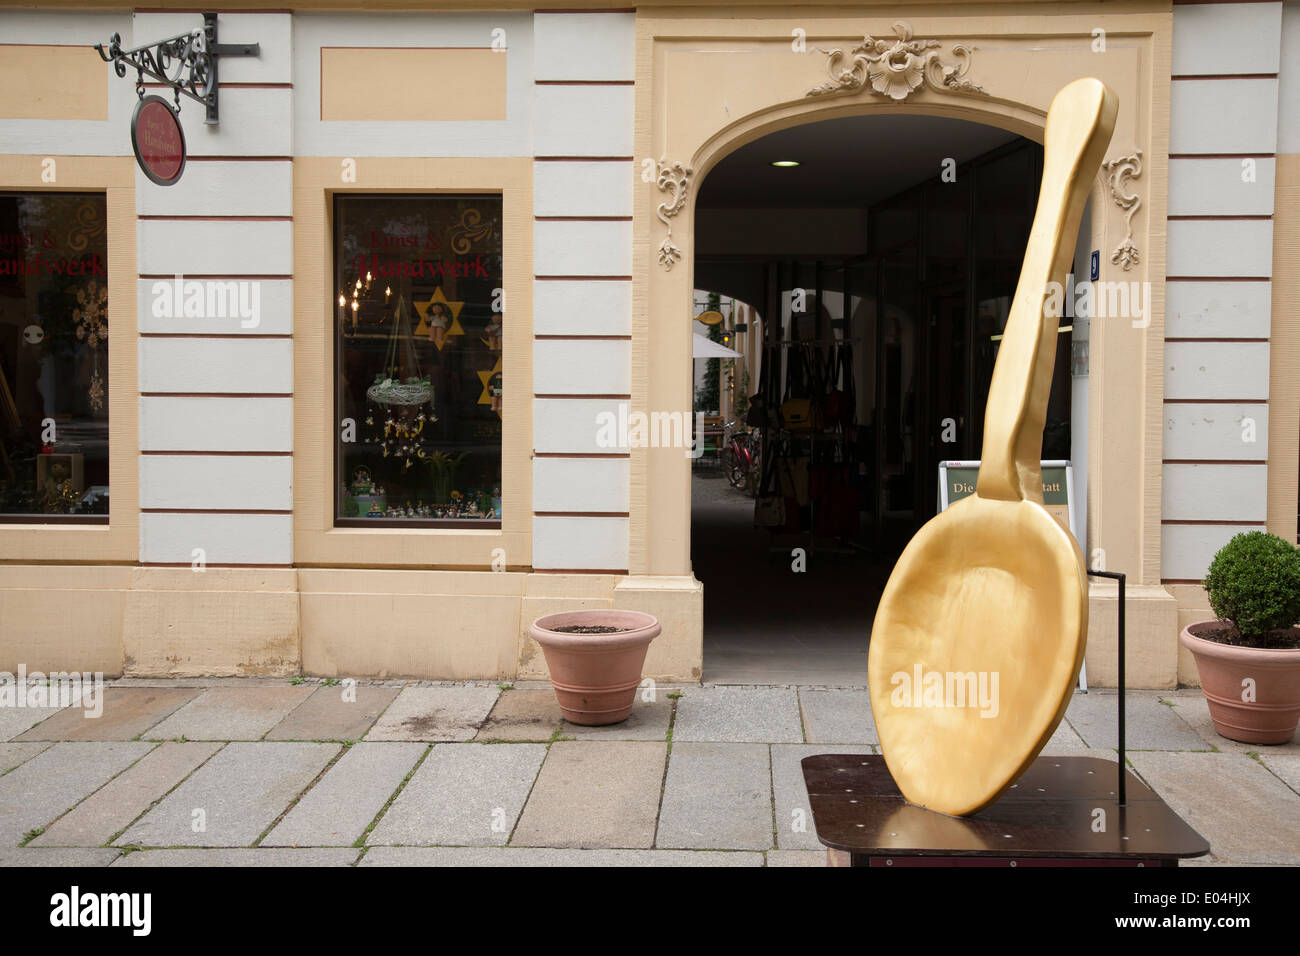 Kunst Handwerk et boutique sur High Street - Hauptstrabe, Dresde, Saxe, Allemagne Banque D'Images